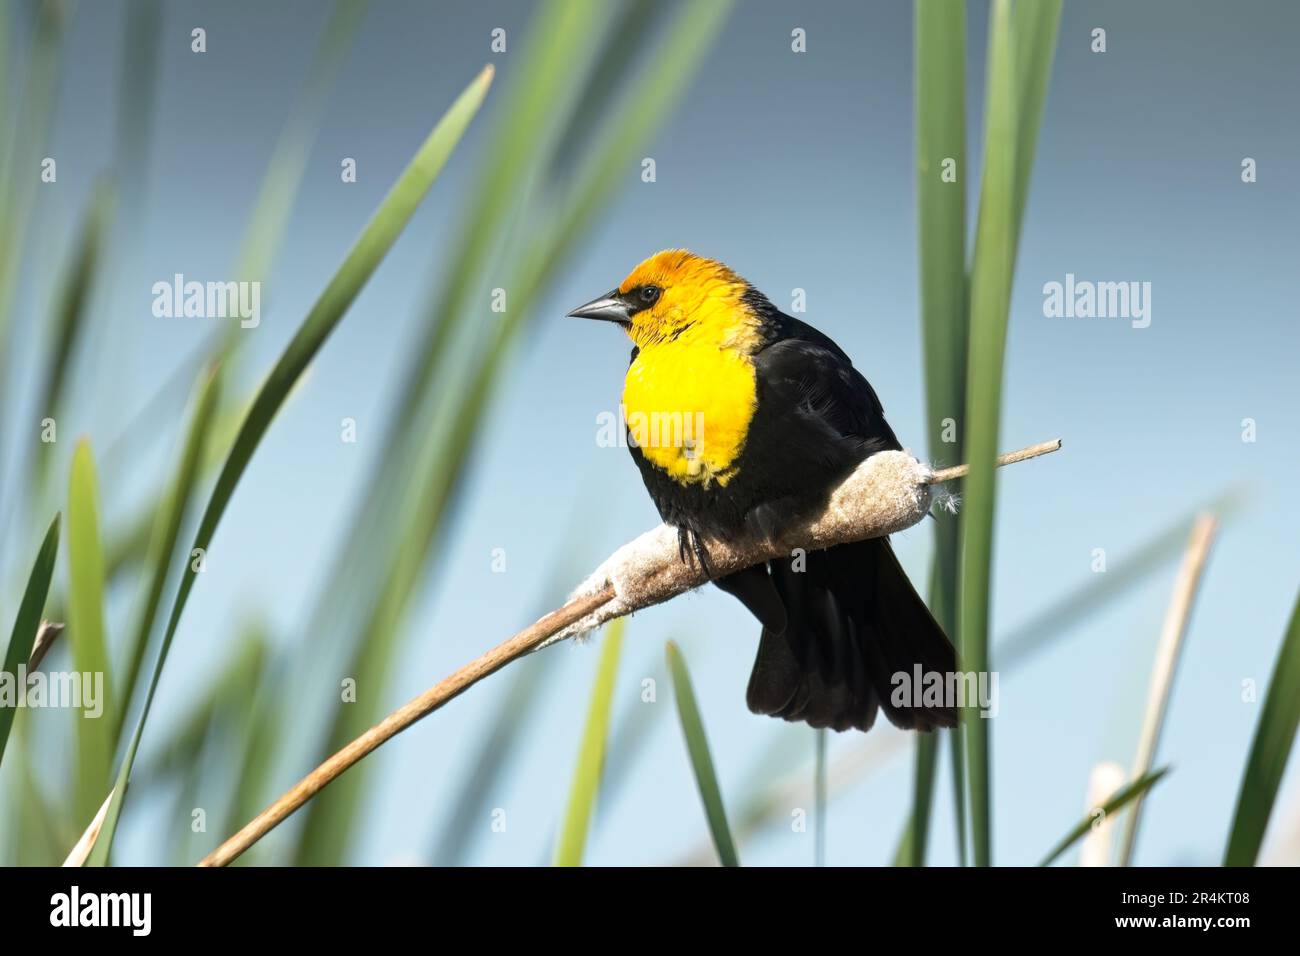 Un adorable blackbird à tête jaune est perché sur un haut-chat dans une zone marécageuse près du lac Liberty, dans l'État de Washington. Banque D'Images